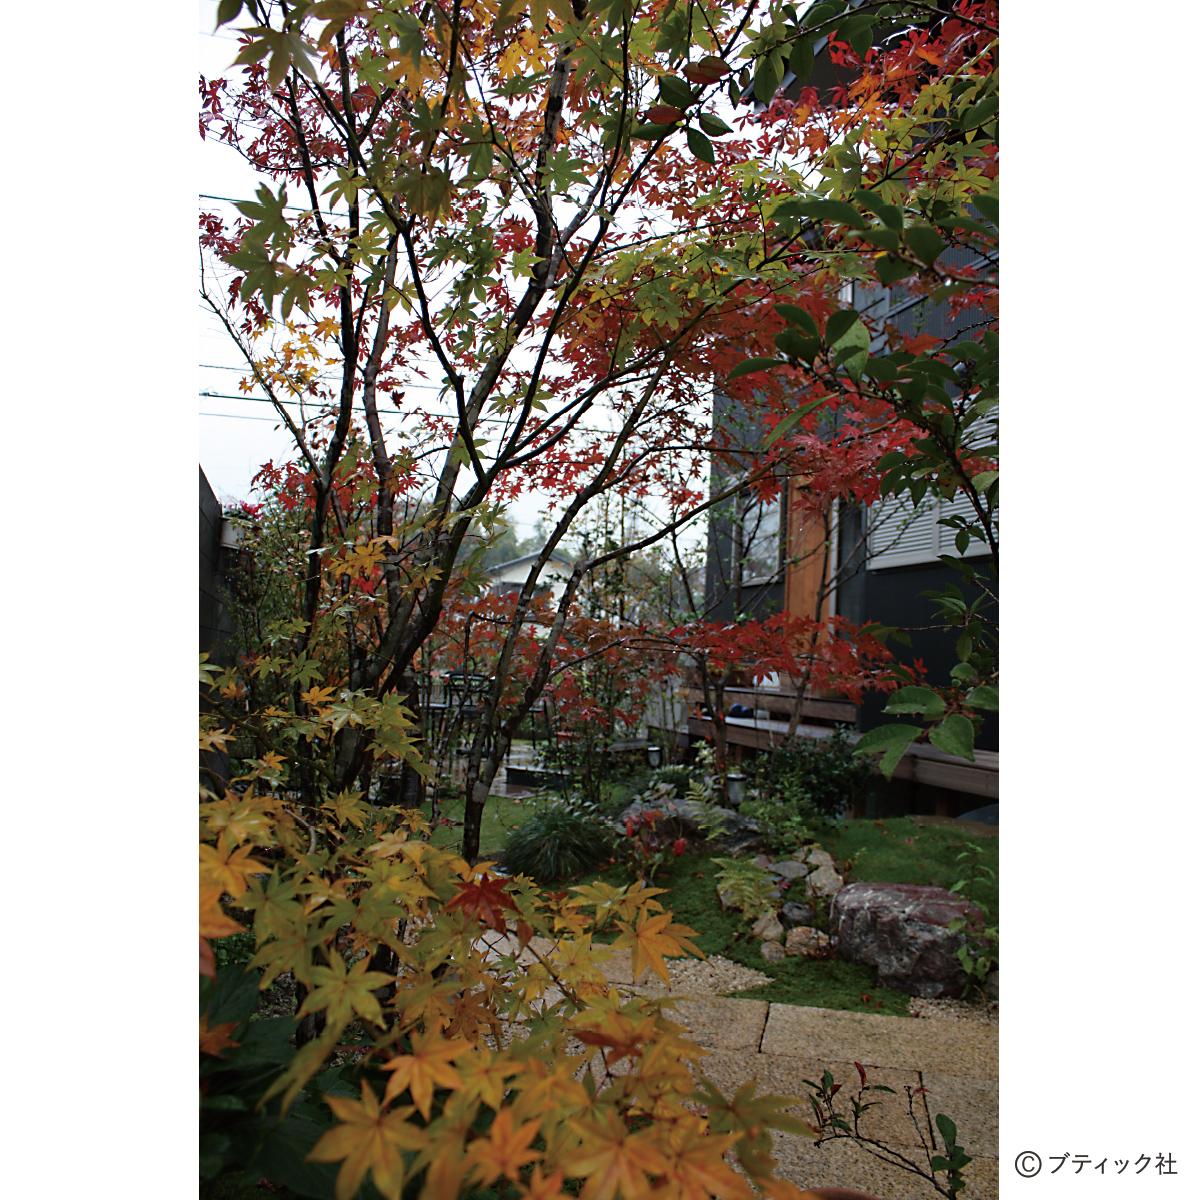 和風の雑木の庭で 秋の紅葉 を楽しむ方法 ぬくもり